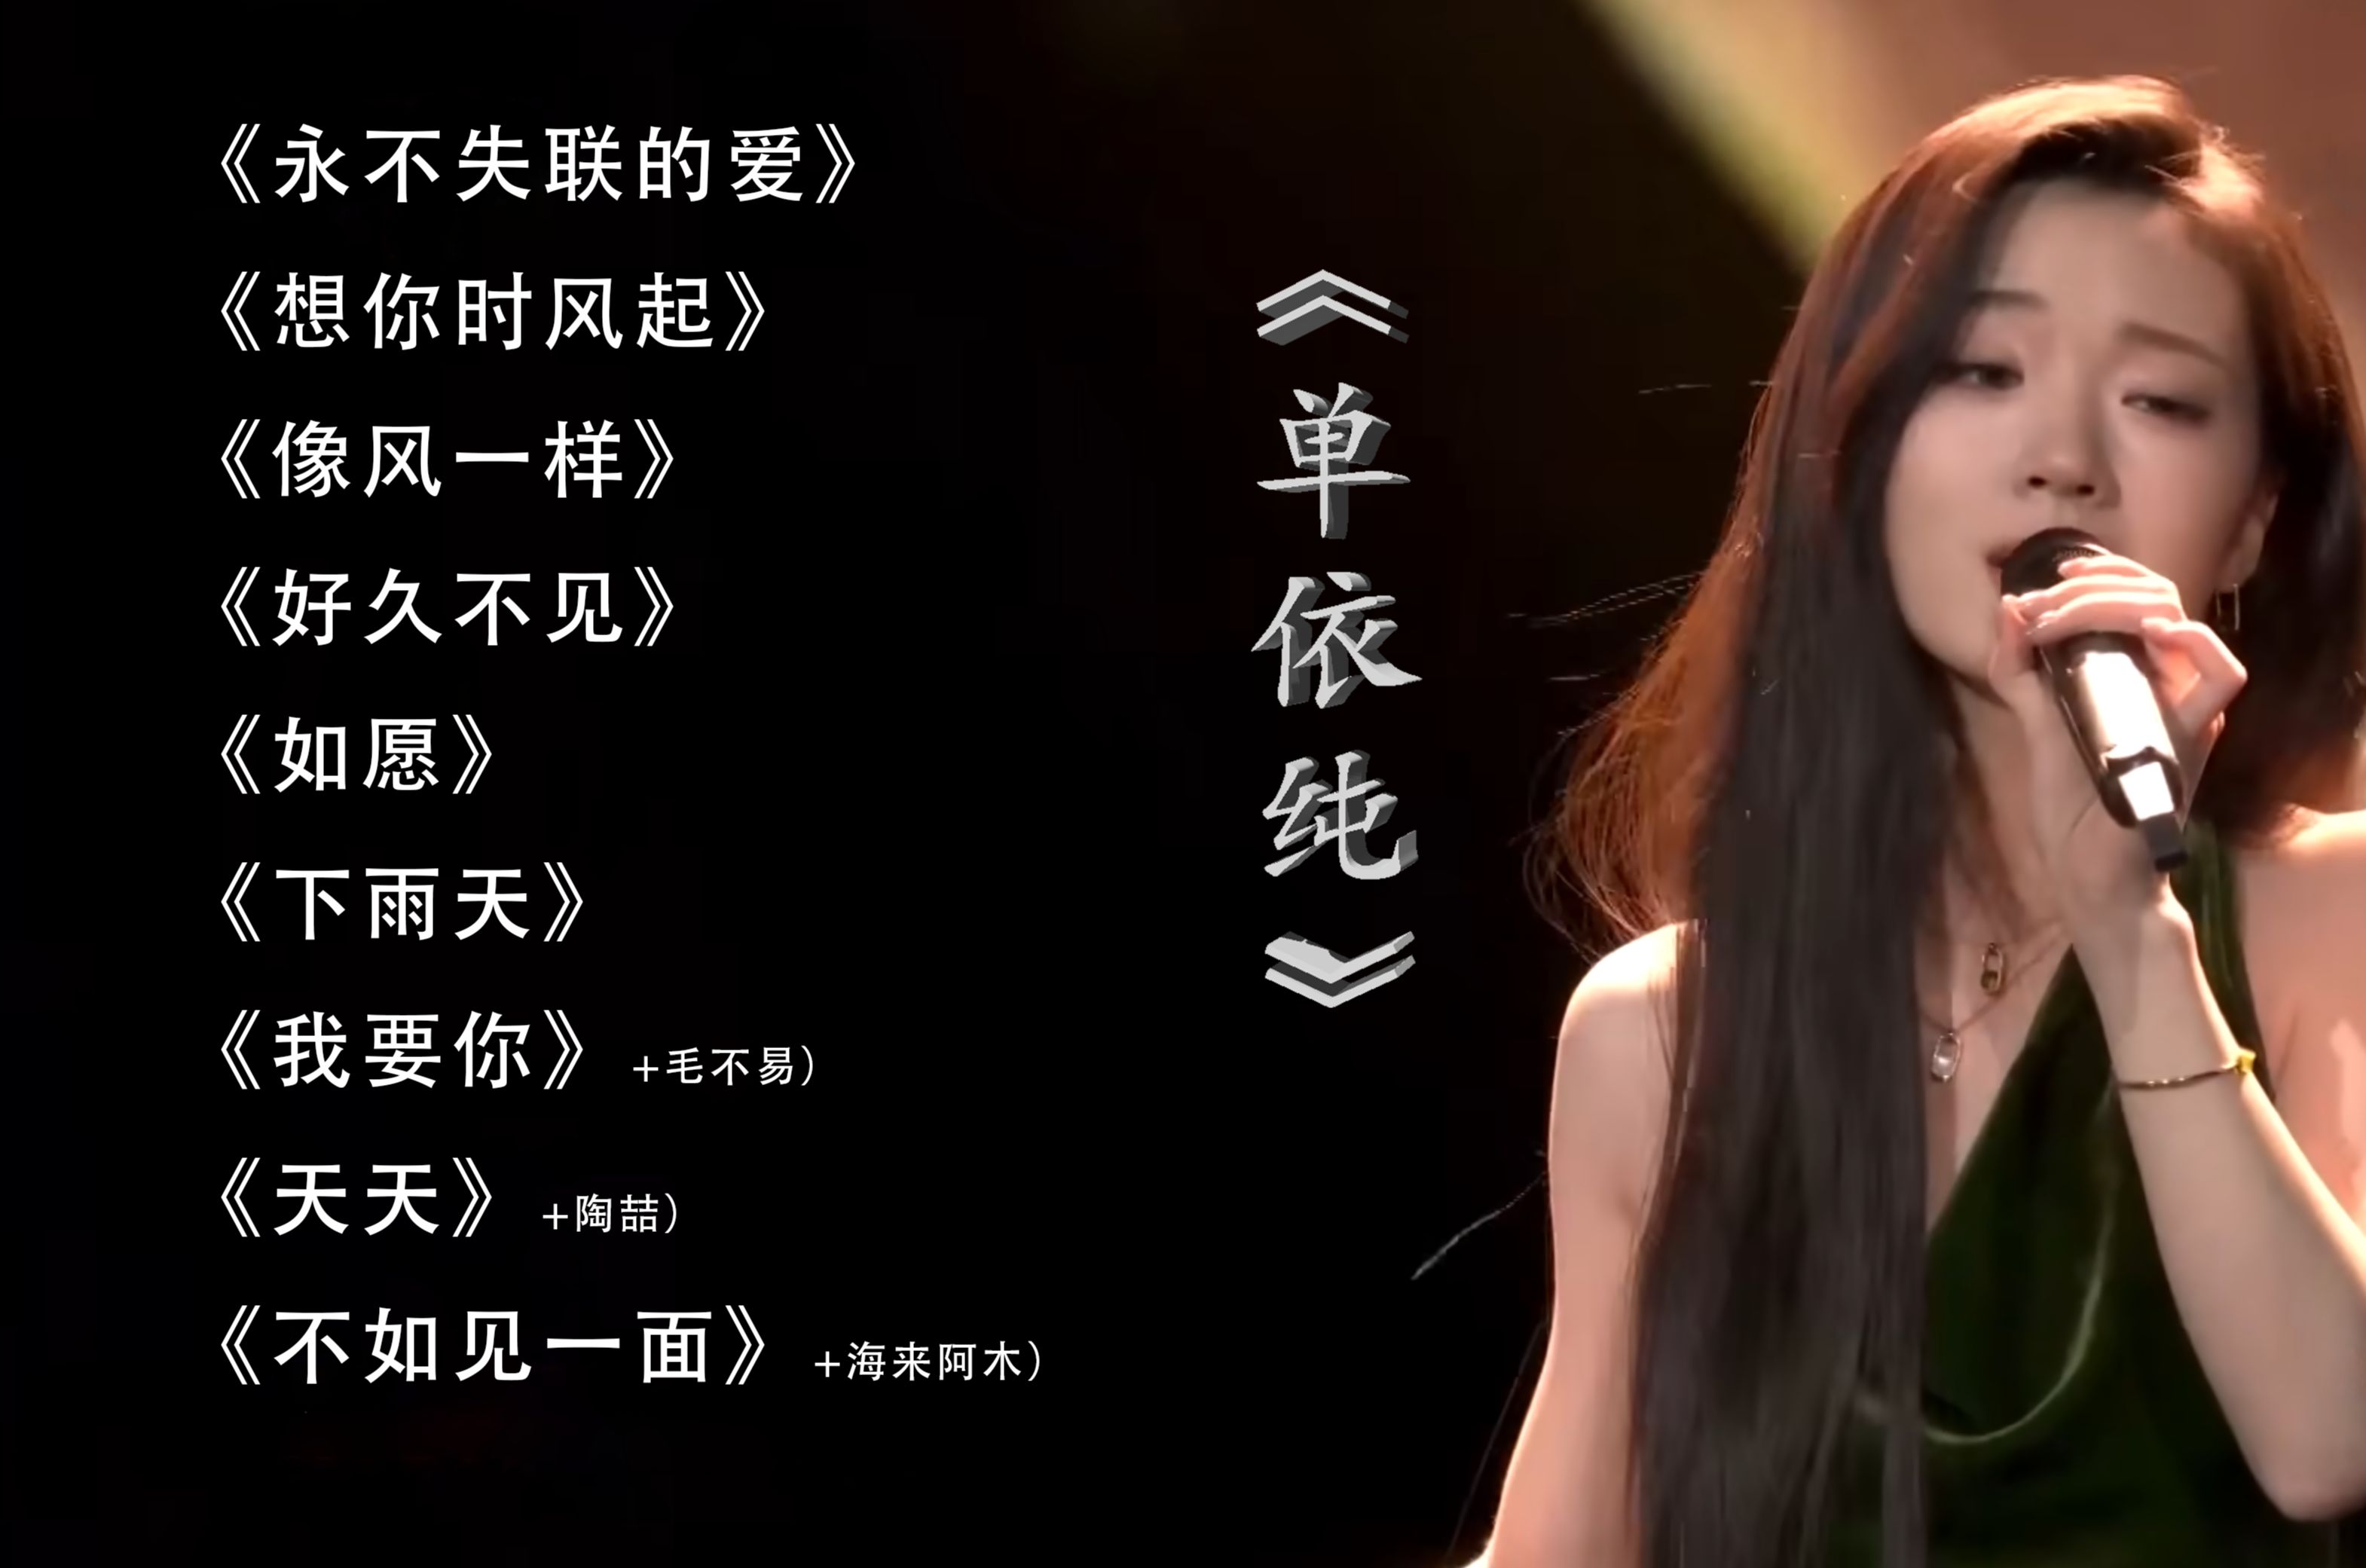 【单依纯】 - Shan Yi Chun  单依纯最好听的歌曲合集 - Flac 无损音质 30分钟纯享版